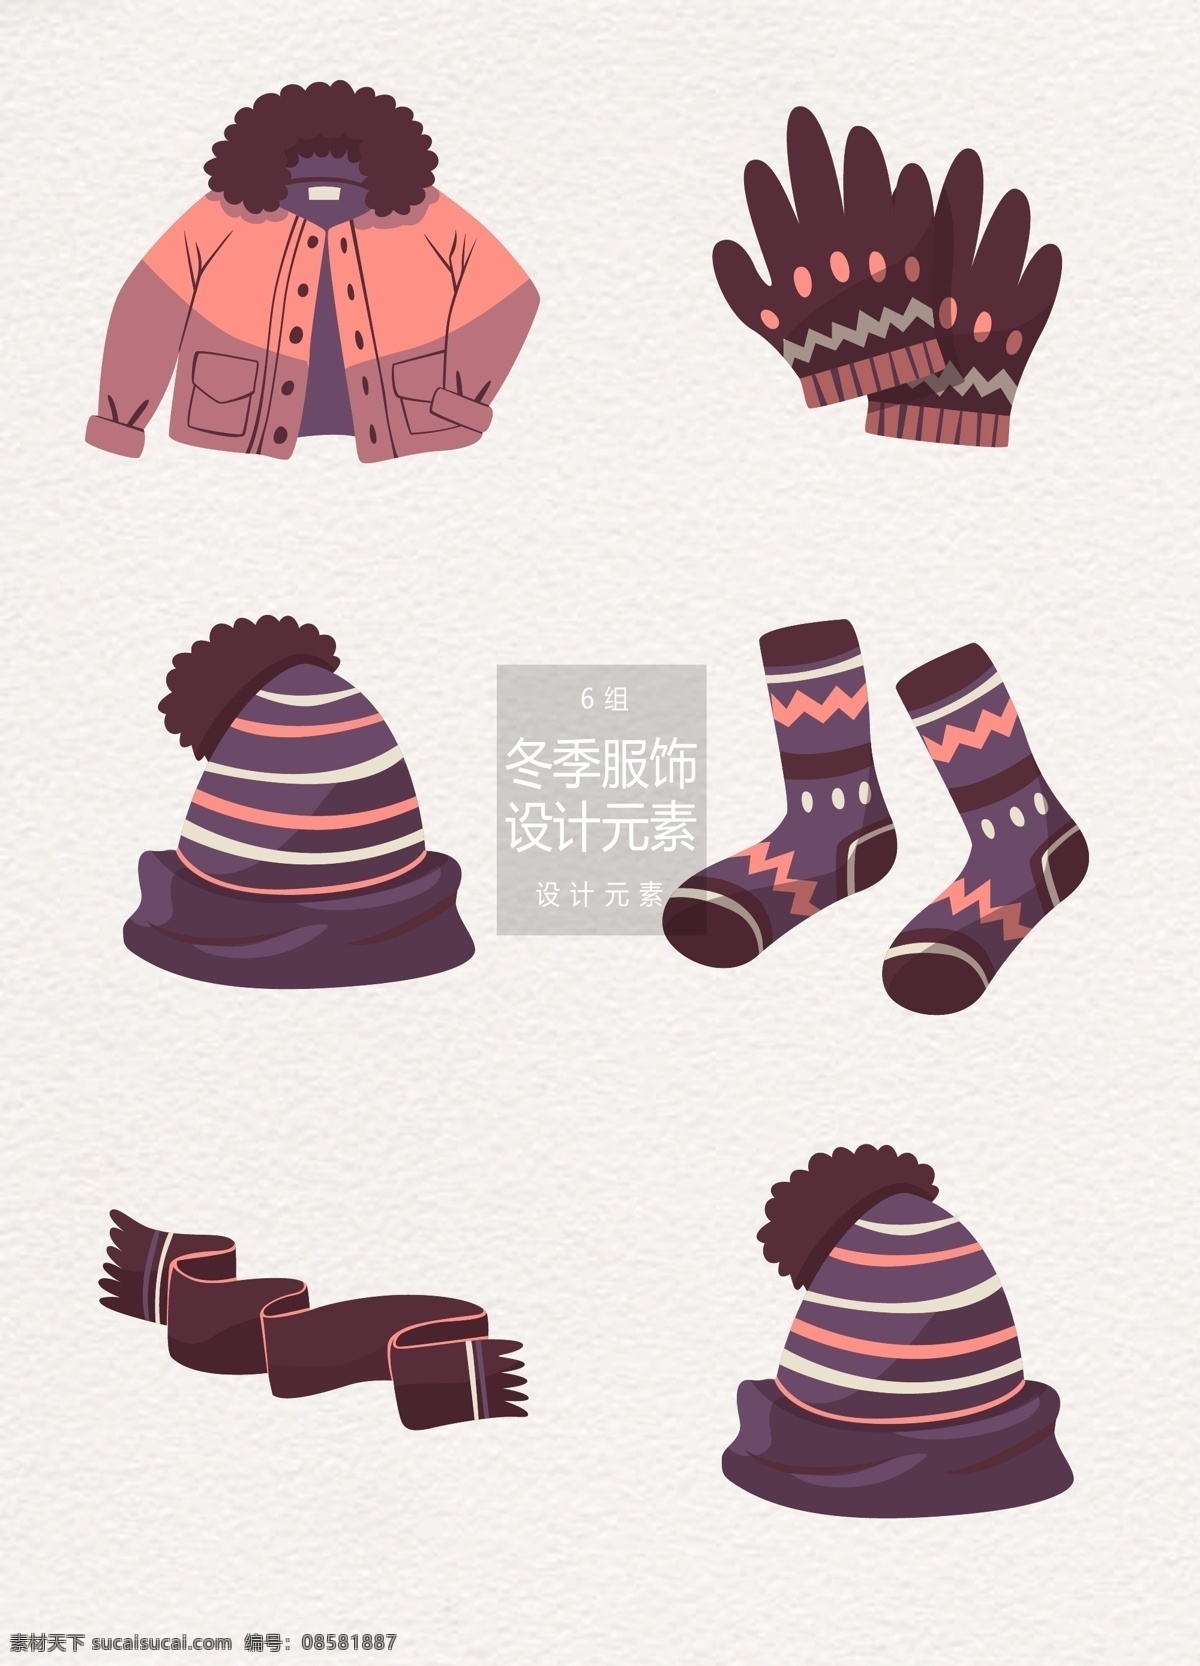 冬季 冬天 服饰 元素 衣服 帽子 袜子 冬天服饰 外套 手套 围巾